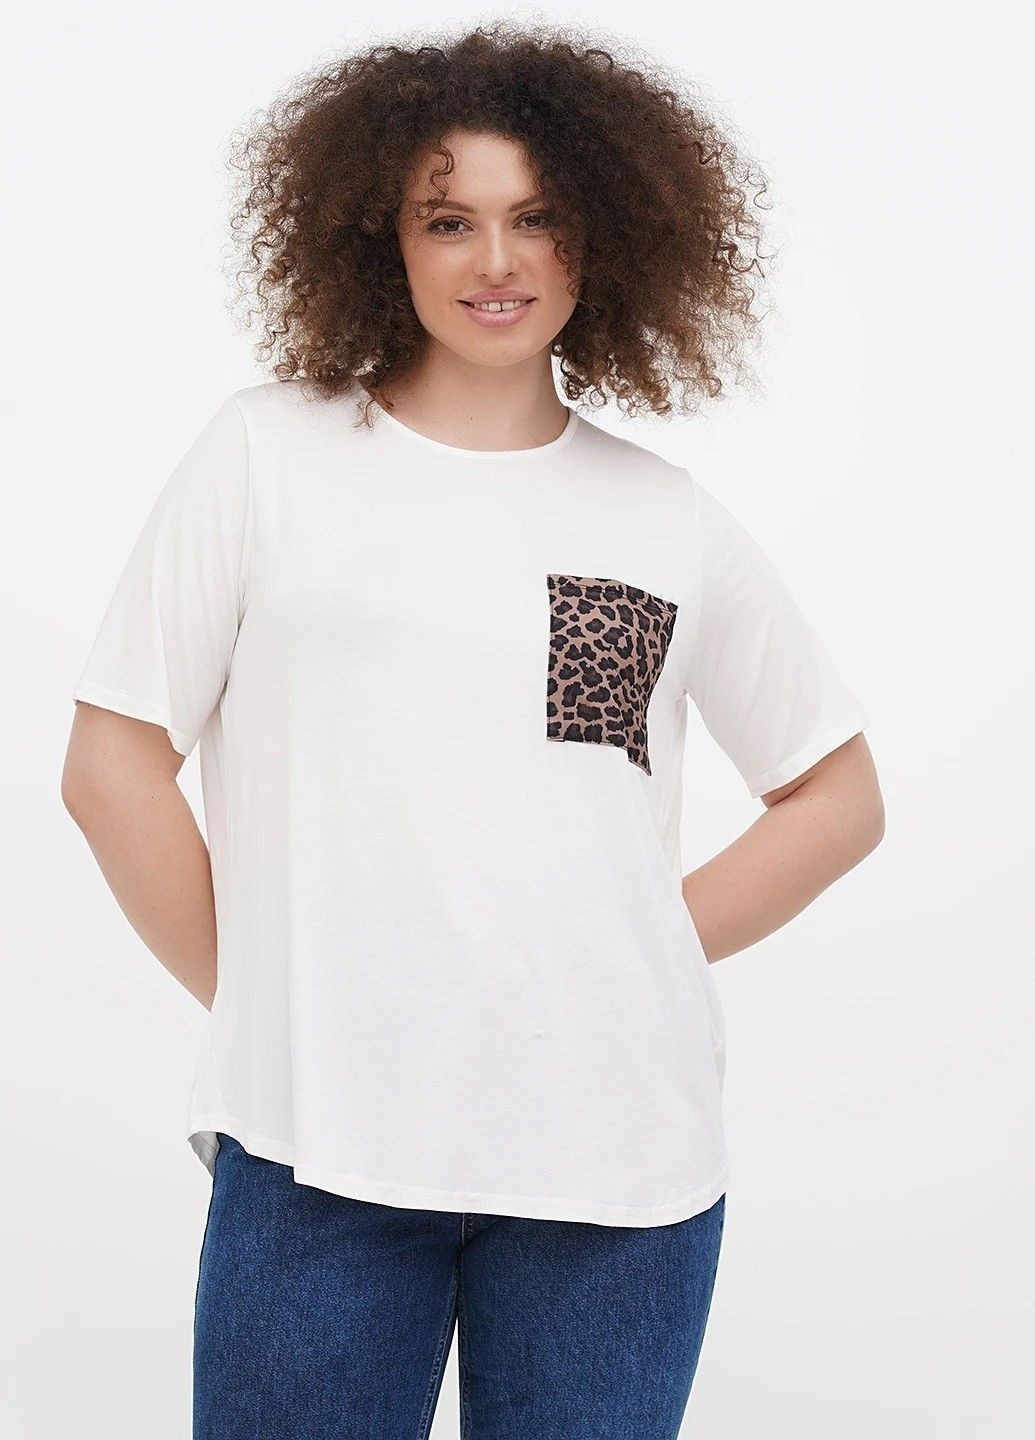 Белая летняя футболка для беременных Boohoo